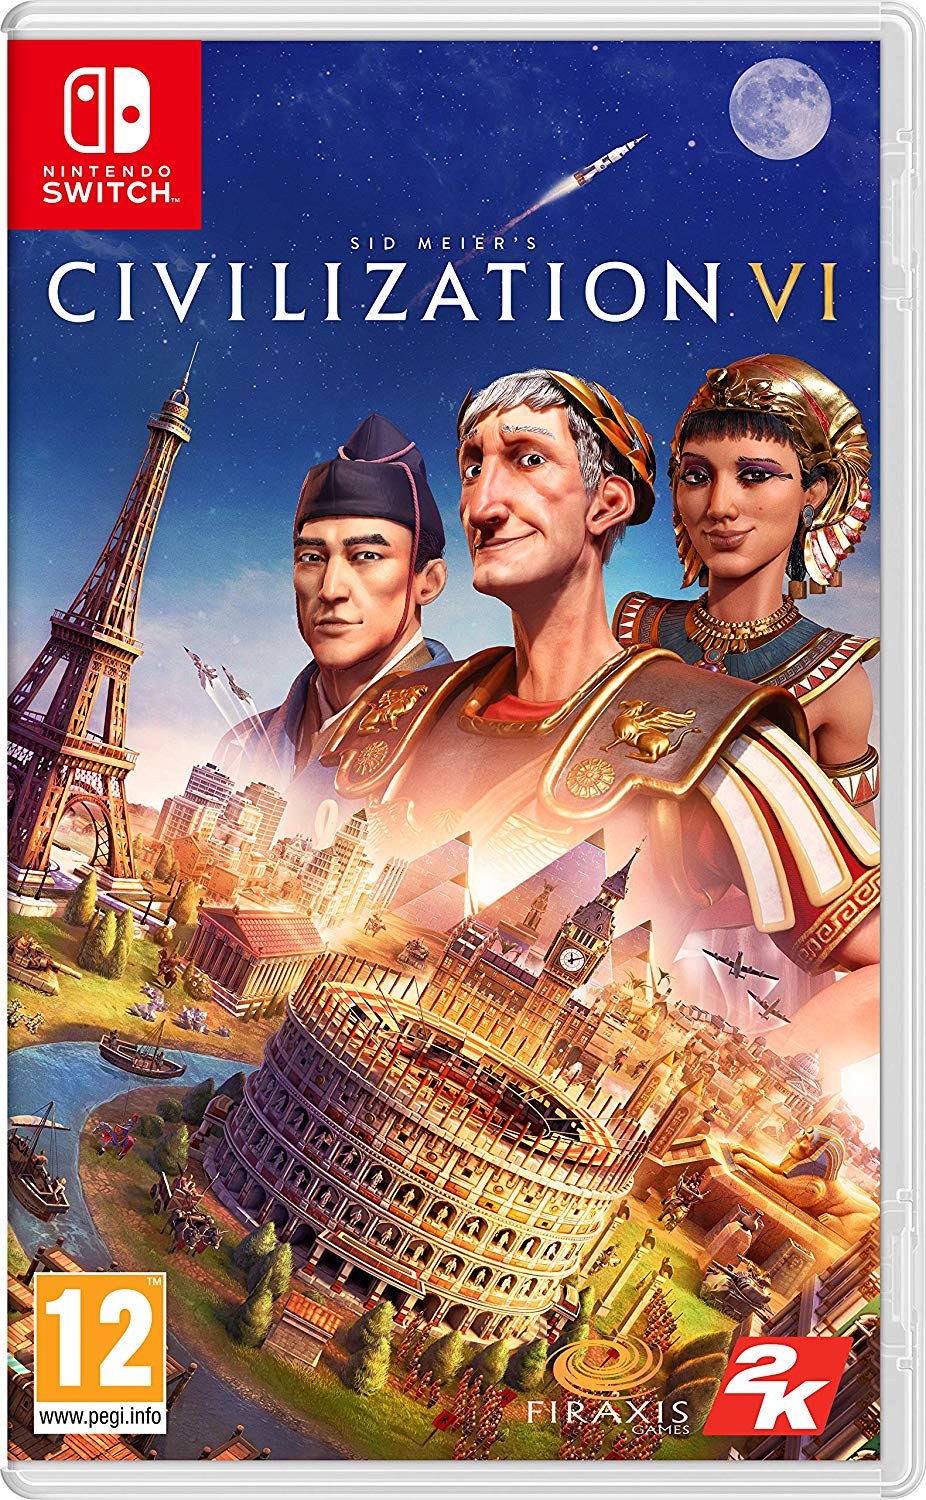 Civilization VI - Nintendo Switch